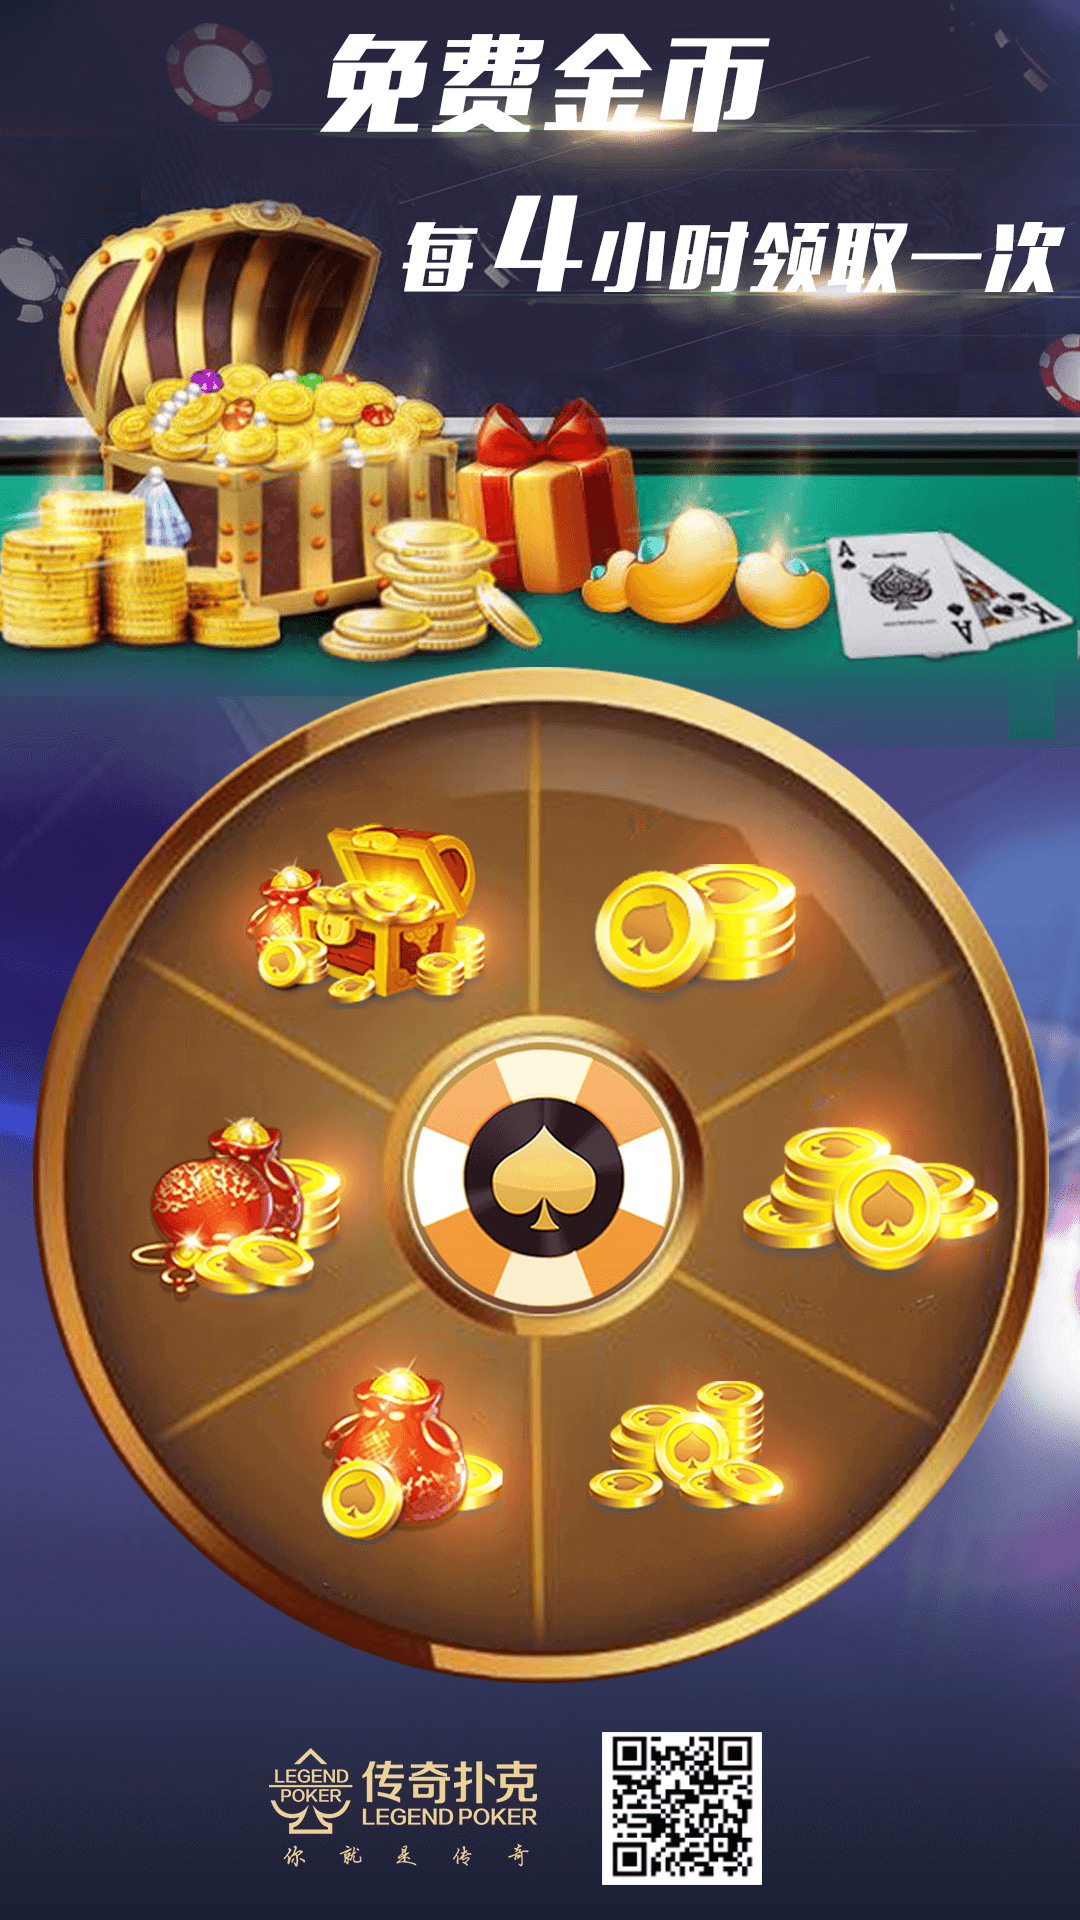 还有一个提高传奇扑克APP游戏的专注能力的好方法就是选择冥想。